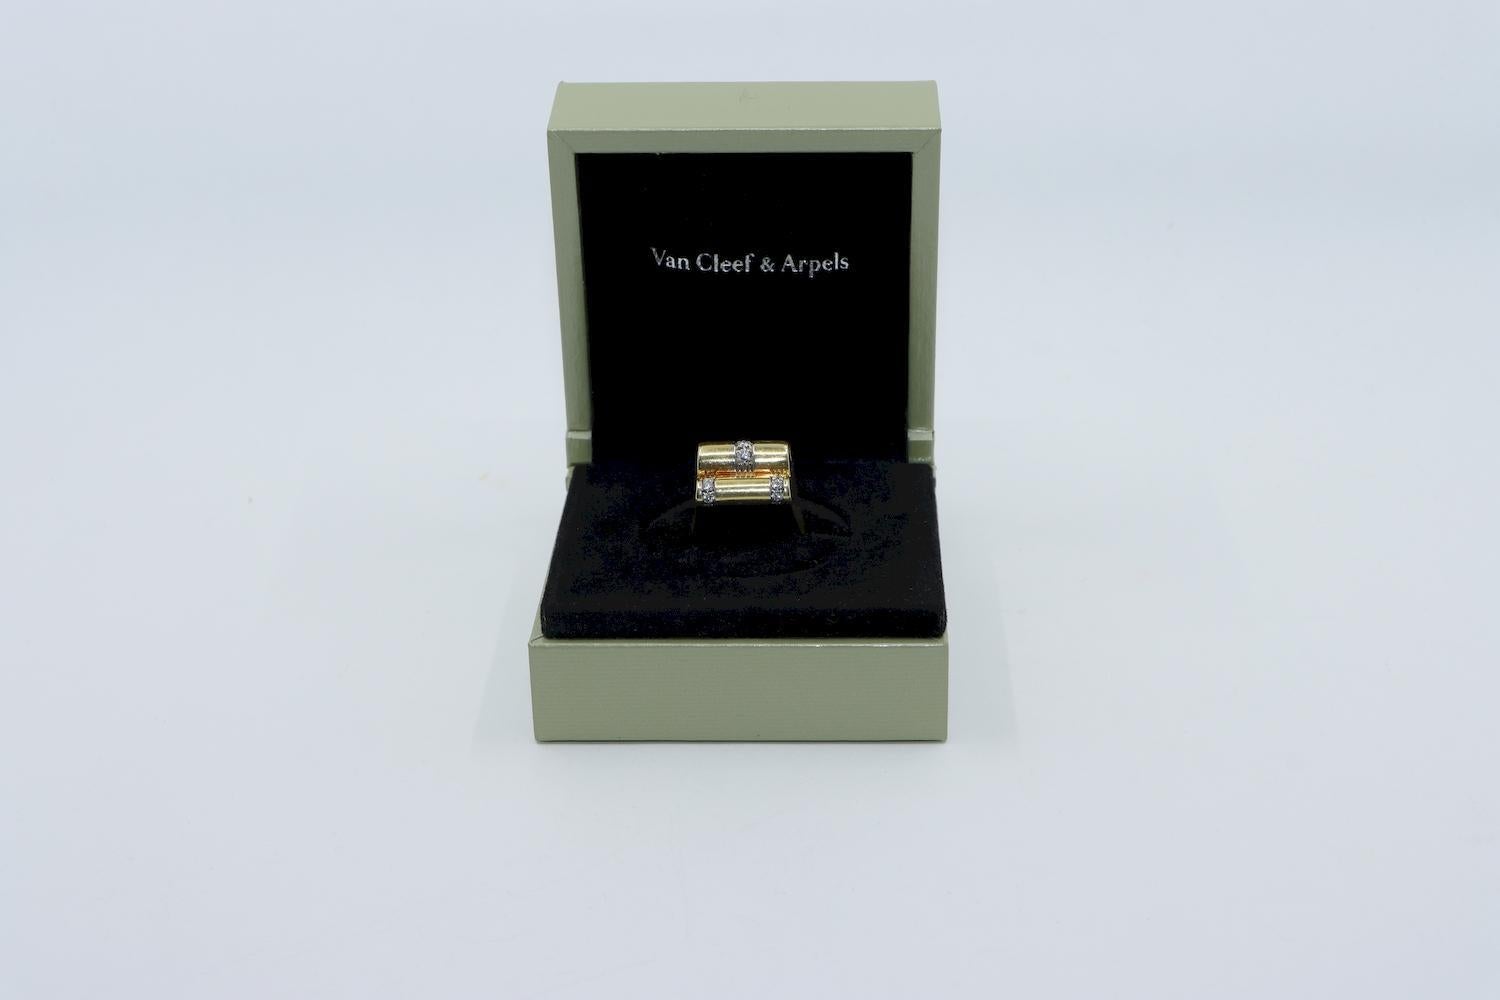 Van Cleef & Arpels Modernist Vintage 18K Gold Diamantring 

Markiert:
VAC
750
Italien

Ungefähre Abmessungen:
7 (Ringgröße) 
1,8 cm (Breite) 
Ca. 0,75 ct (Diamant) 
13,6 Gramm Gewicht.